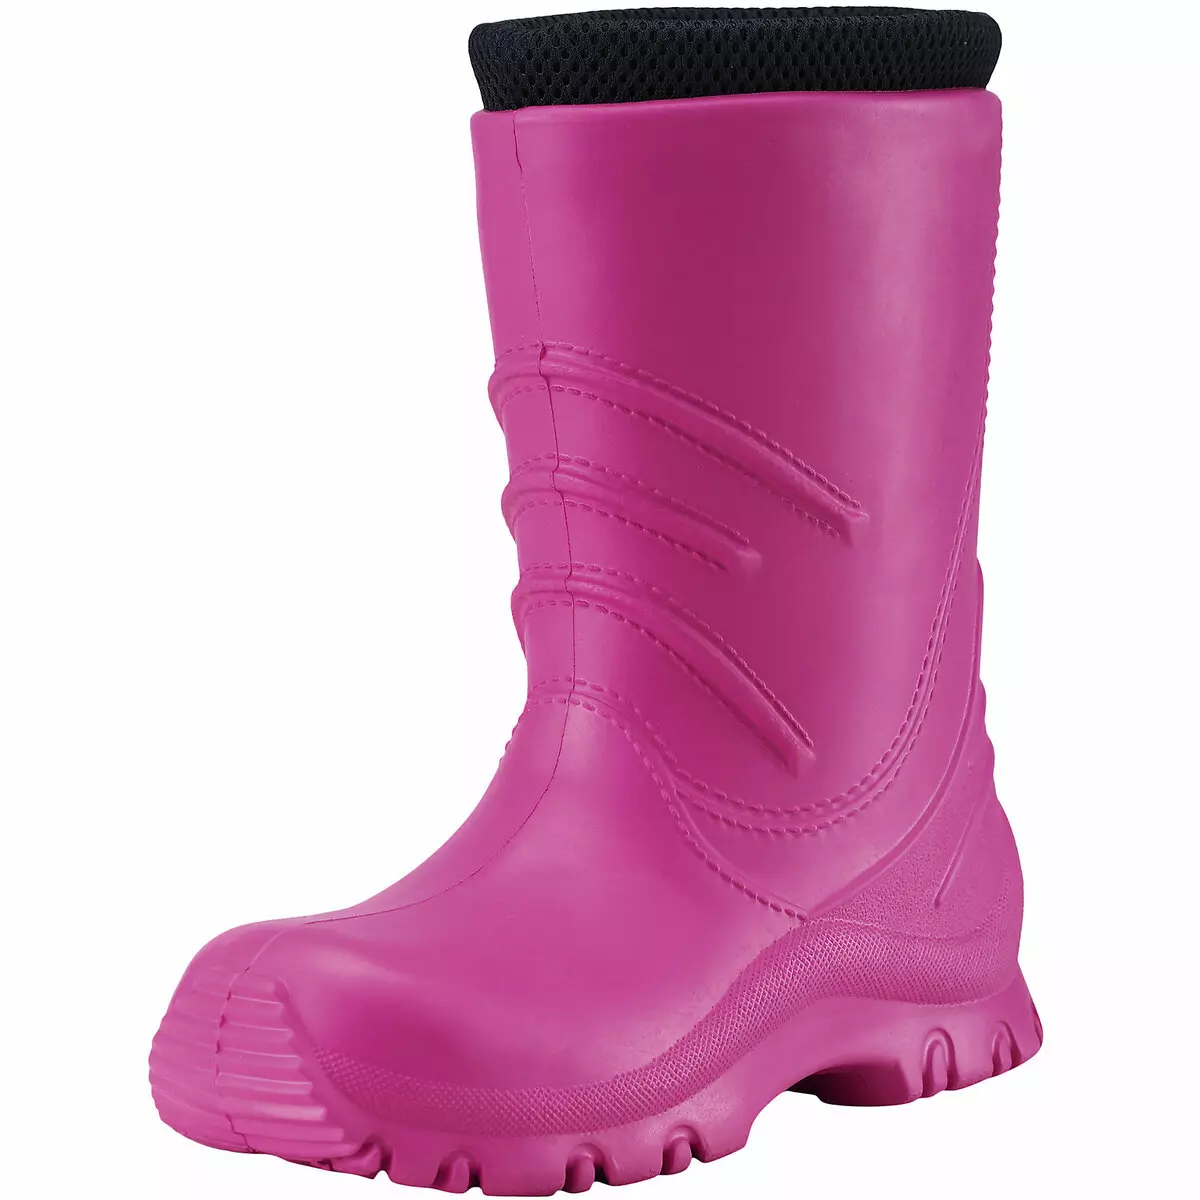 Reim Boots (72 сурет): қызыл балаларға арналған қысқы балалар модельдері, Reima, өлшемді тор және шолулар Reima 2256_53